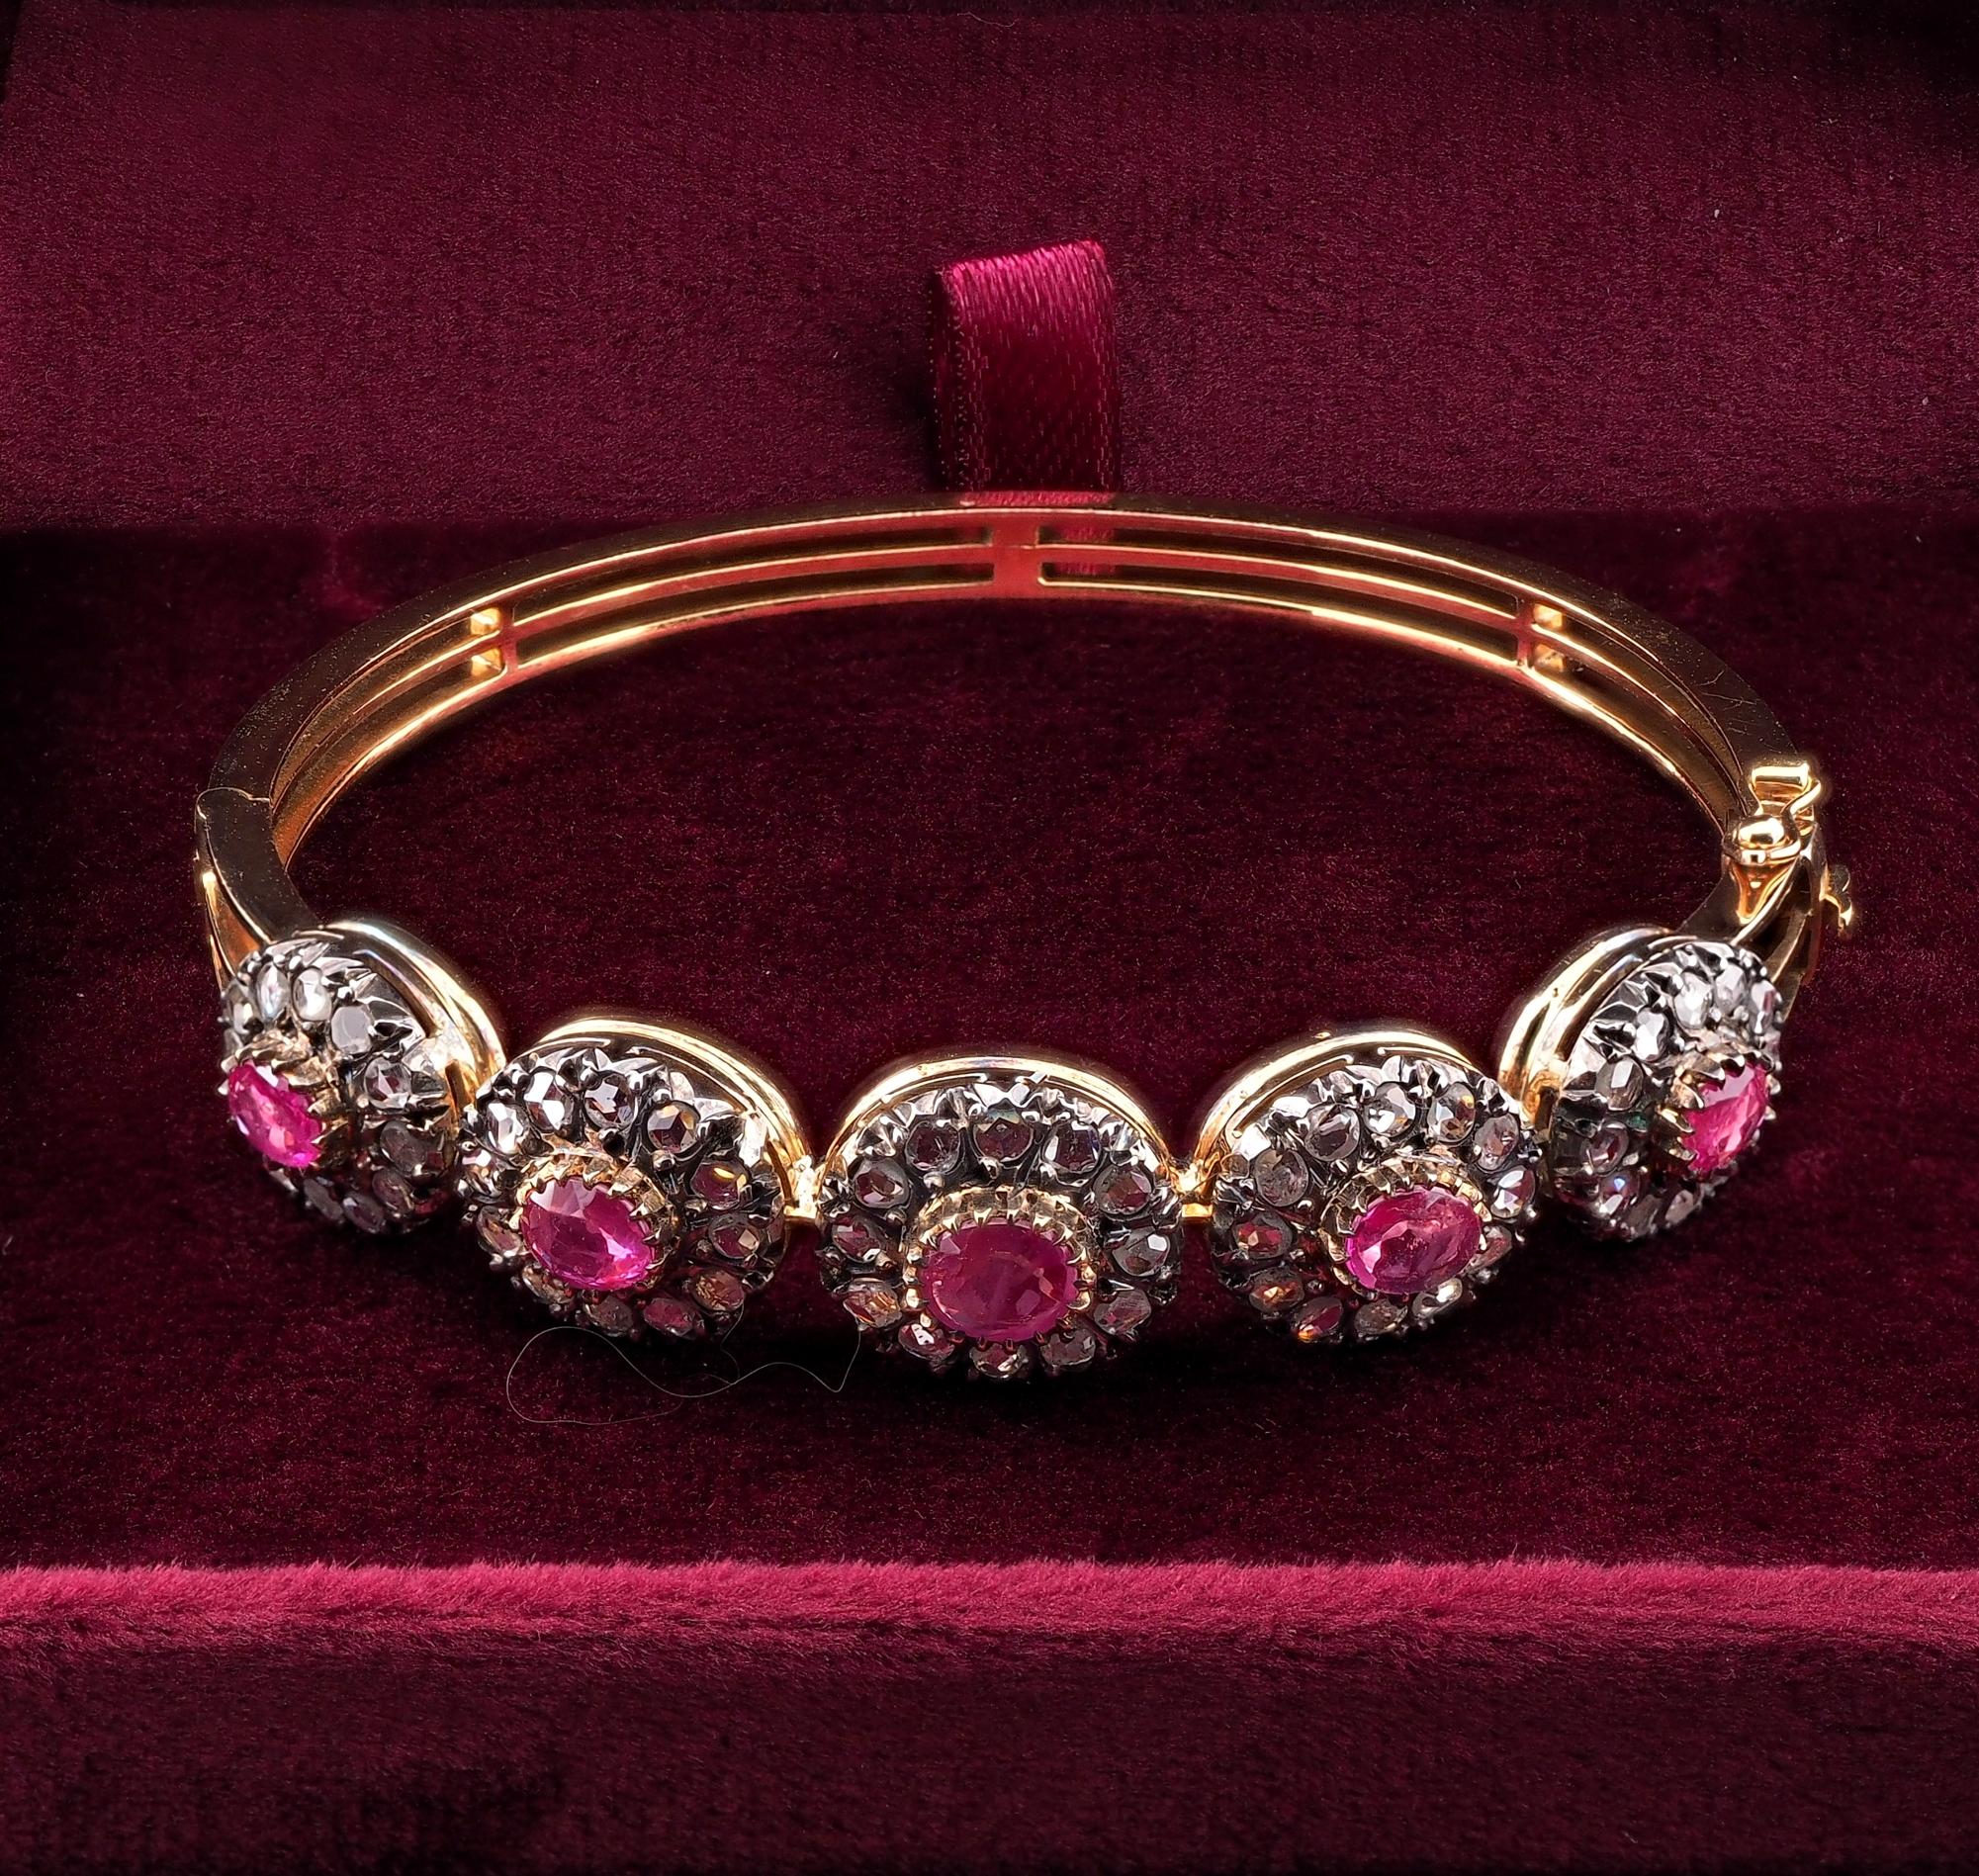 Ein wunderschöner, seltener Armreif mit Diamanten und Rubinen in viktorianischer Tradition, ca. 1890
Handgefertigt aus massivem 18-karätigem Gold mit Anteilen von Silber für das Diamantgehäuse
Atemberaubendes Rivieredesign mit mehreren Diamanten und